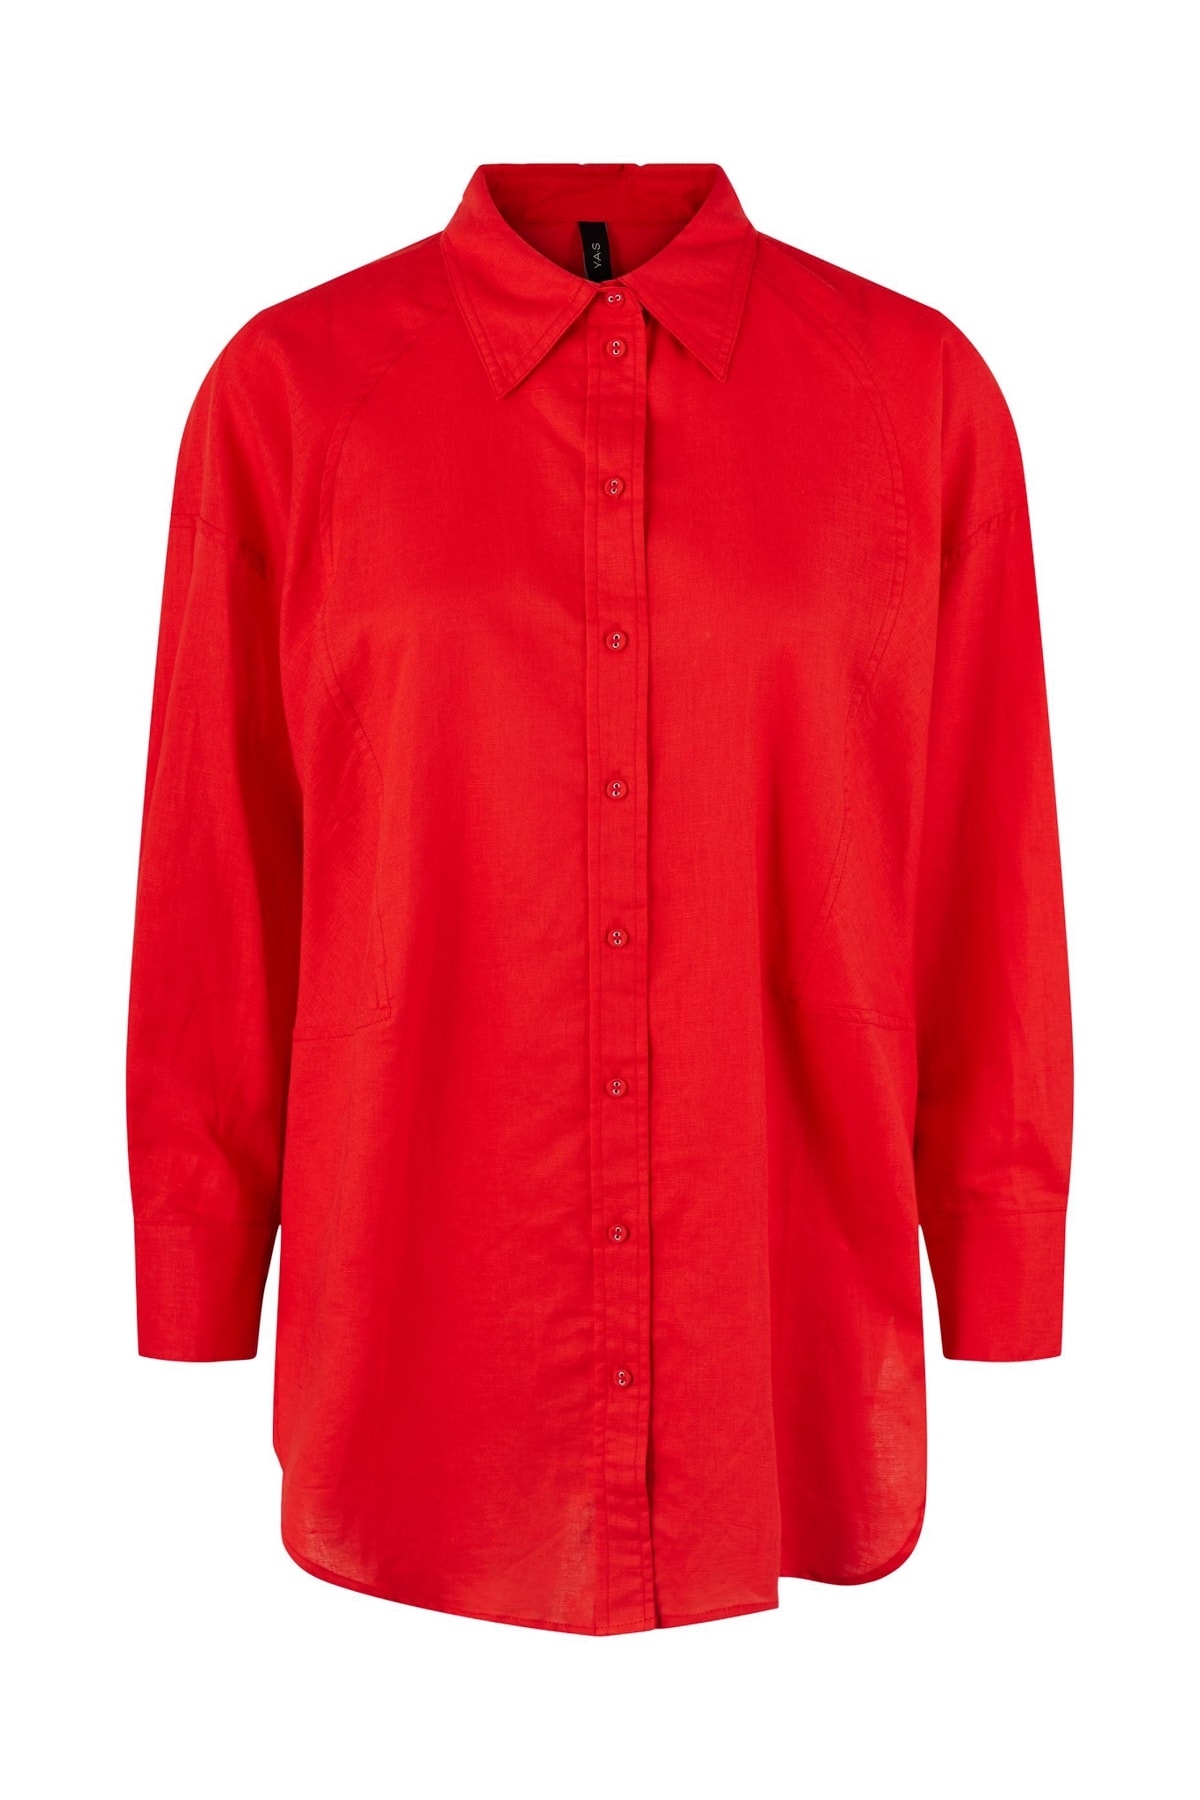 Y.A.S. Hemd Rot Regular Fit Fast ausverkauft